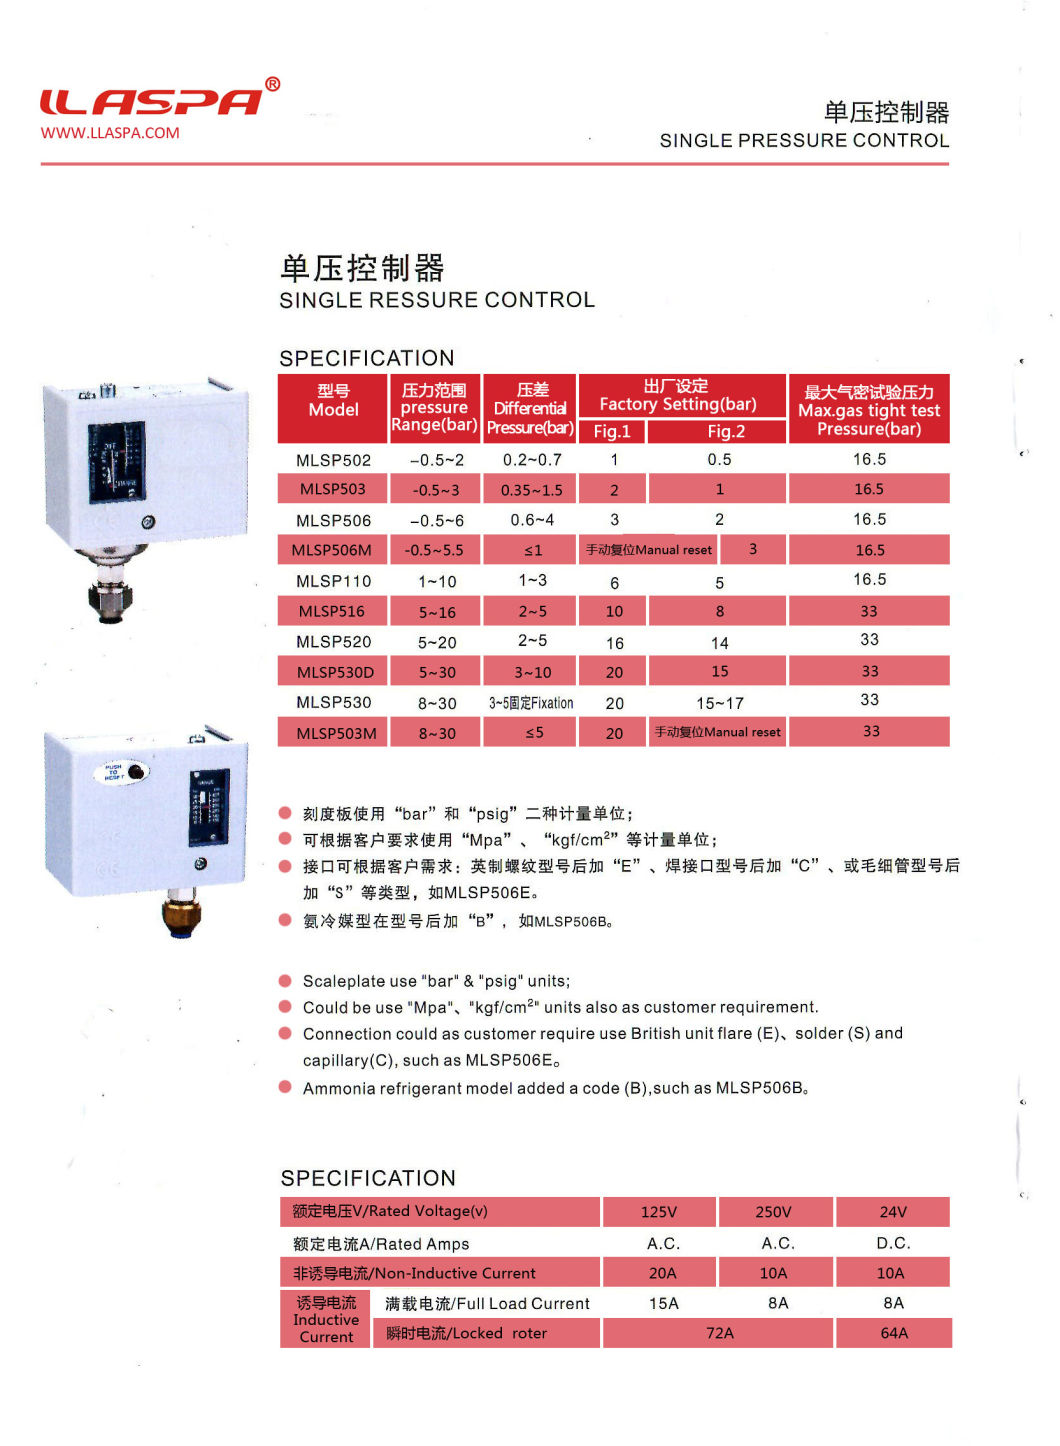 Single Pressure Control Pressure Switch for Air Compressor Mlsp506e